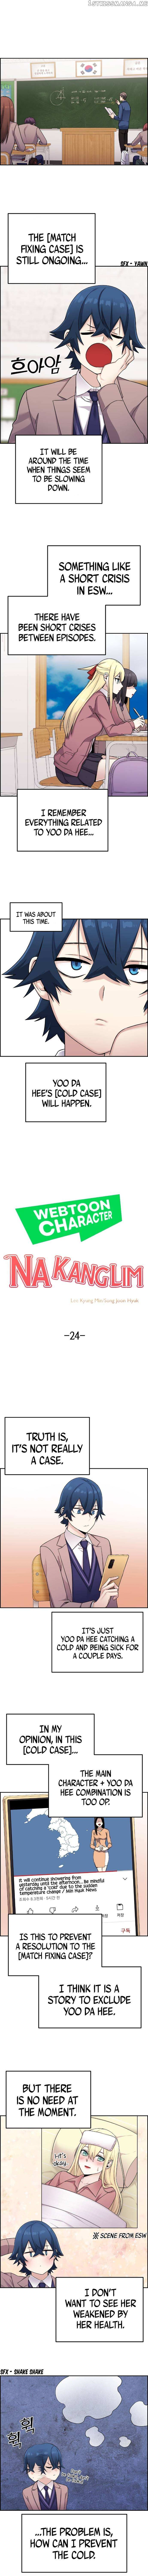 Webtoon Character Na Kang Lim - Page 2